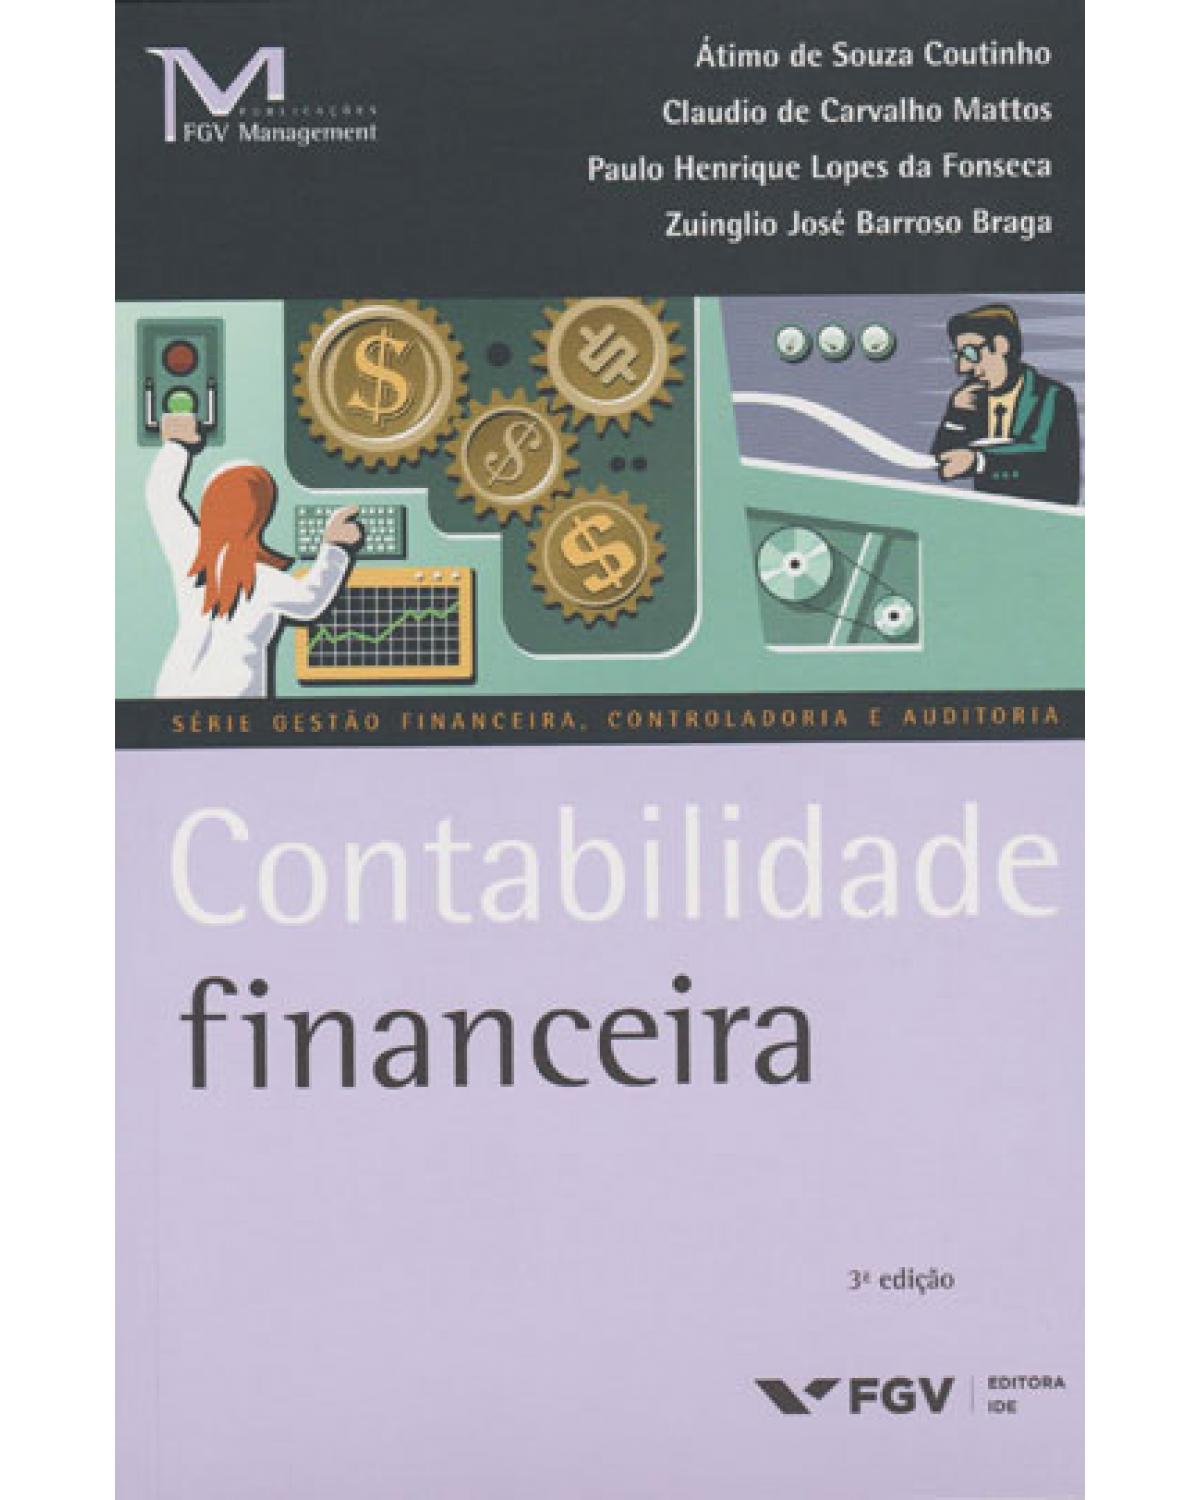 Contabilidade financeira - 3ª Edição